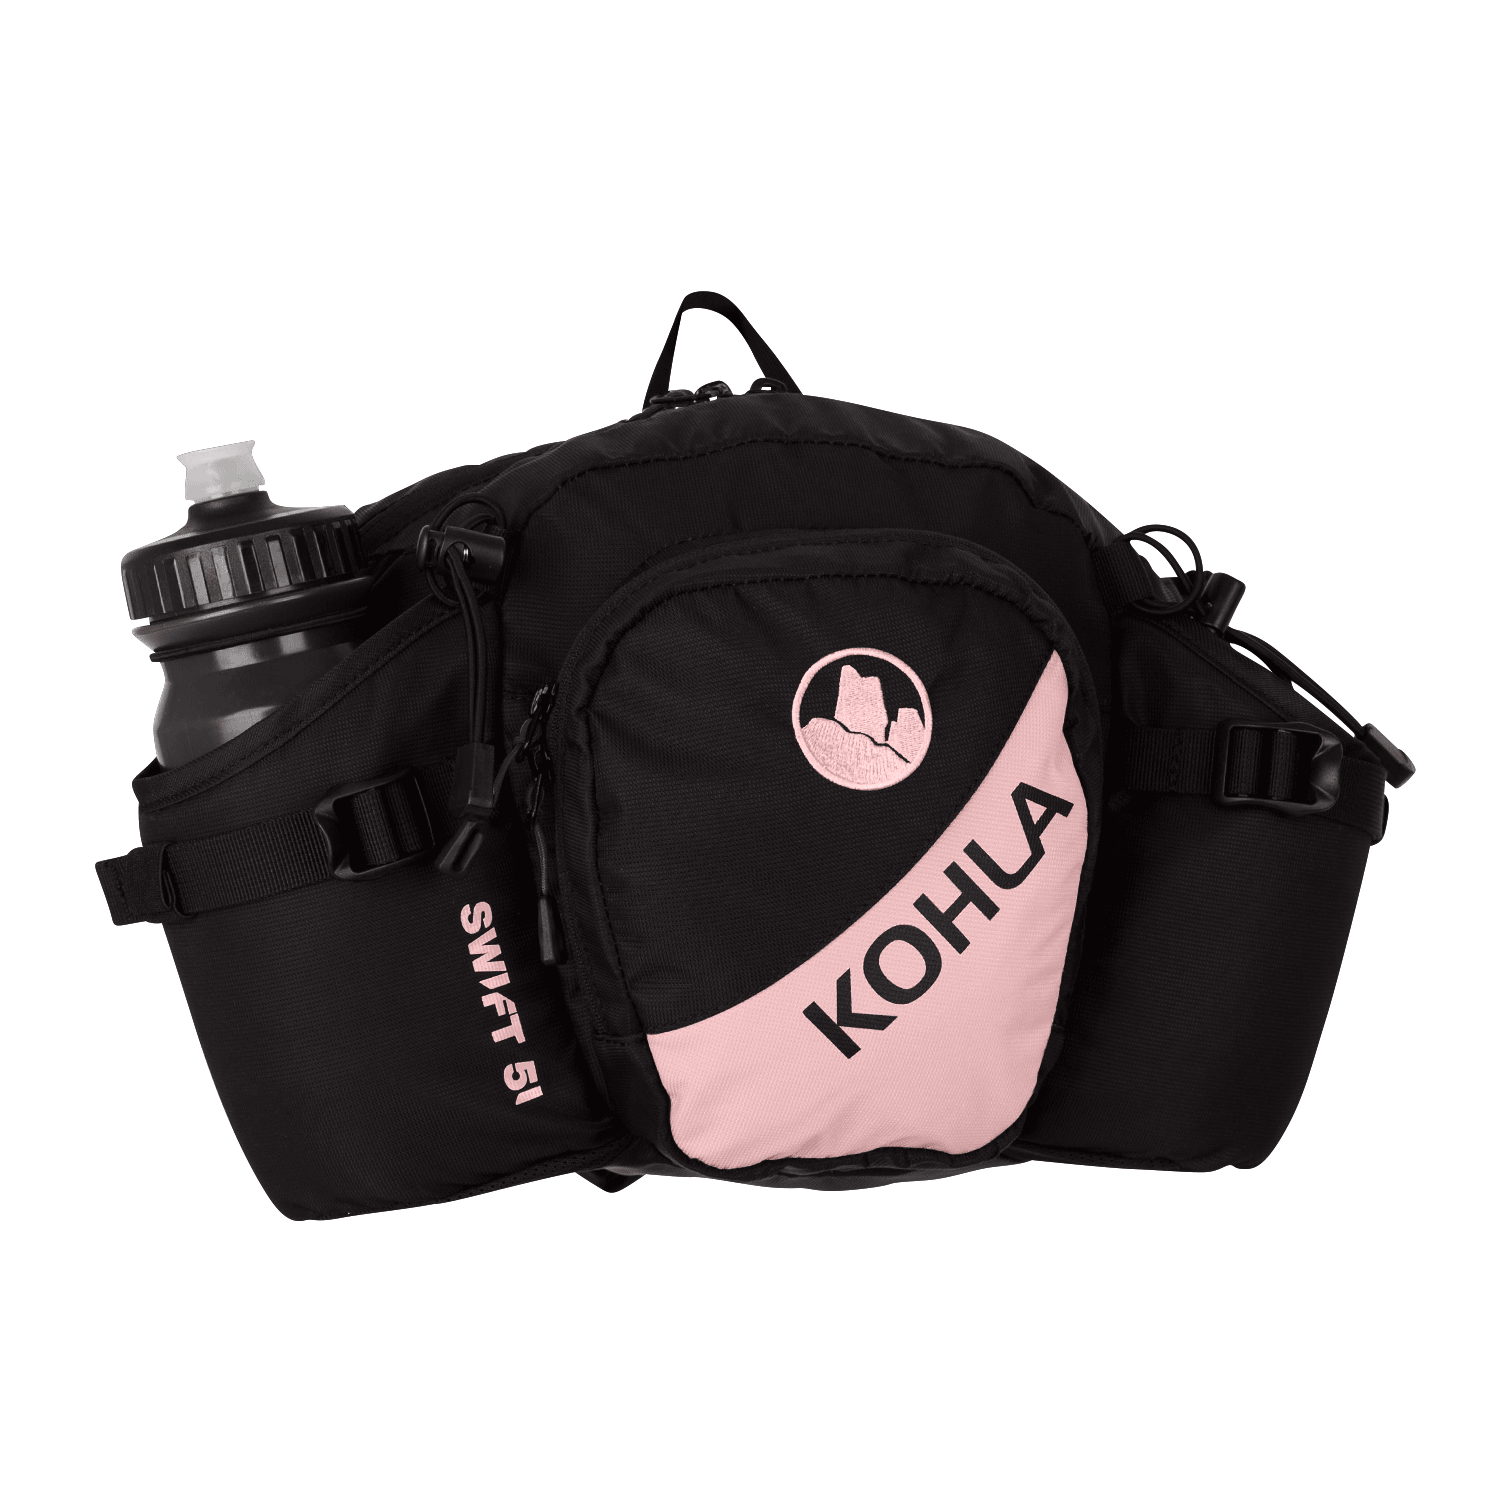 Hüfttasche Swift von KOHLA rosa schwarz